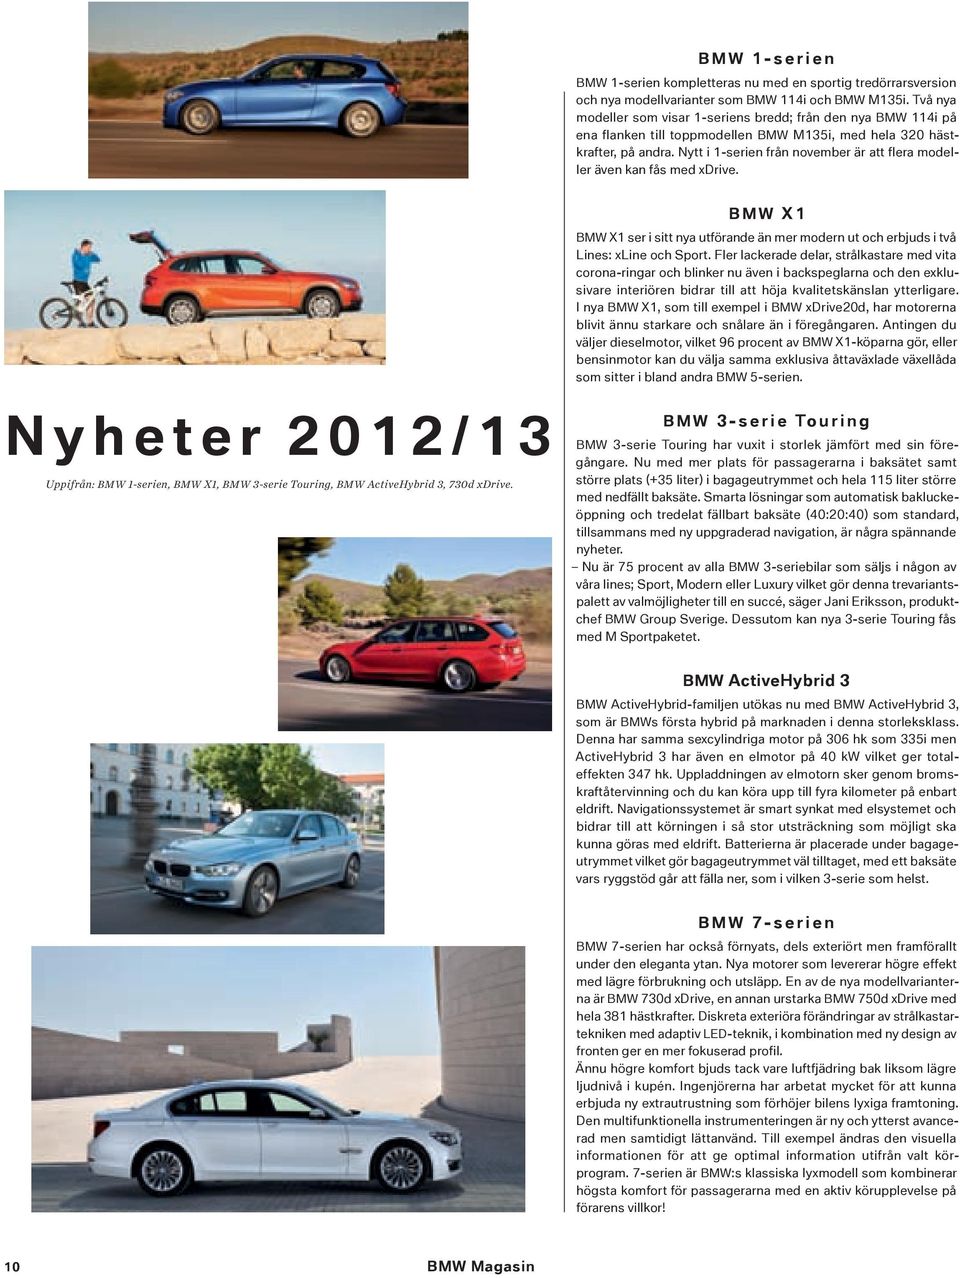 Nytt i 1-serien från november är att flera modeller även kan fås med xdrive. Nyheter 2012/13 Uppifrån: BMW 1-serien, BMW X1, BMW 3-serie Touring, BMW ActiveHybrid 3, 730d xdrive.